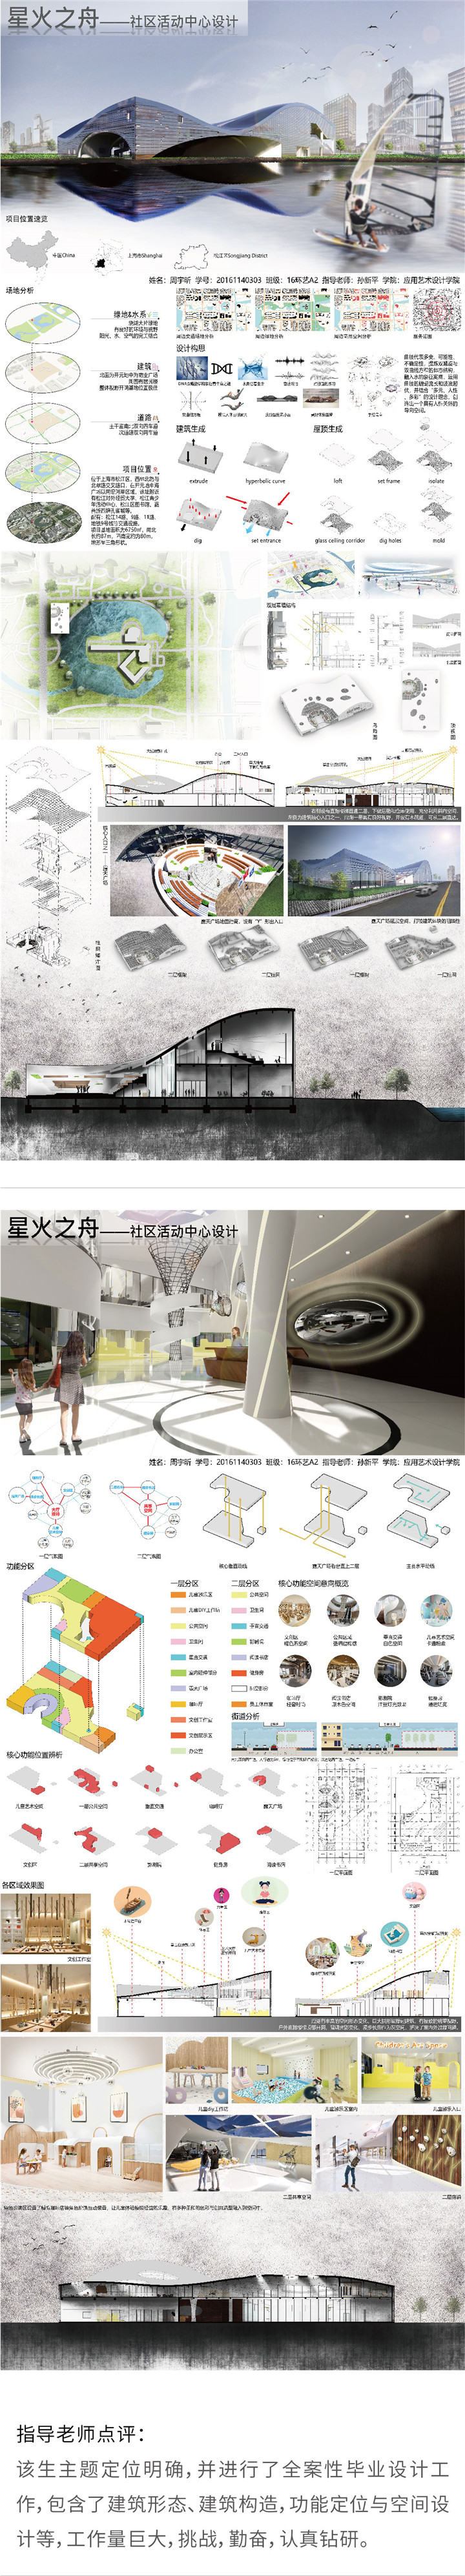 环境设计——星火之舟-设计中国